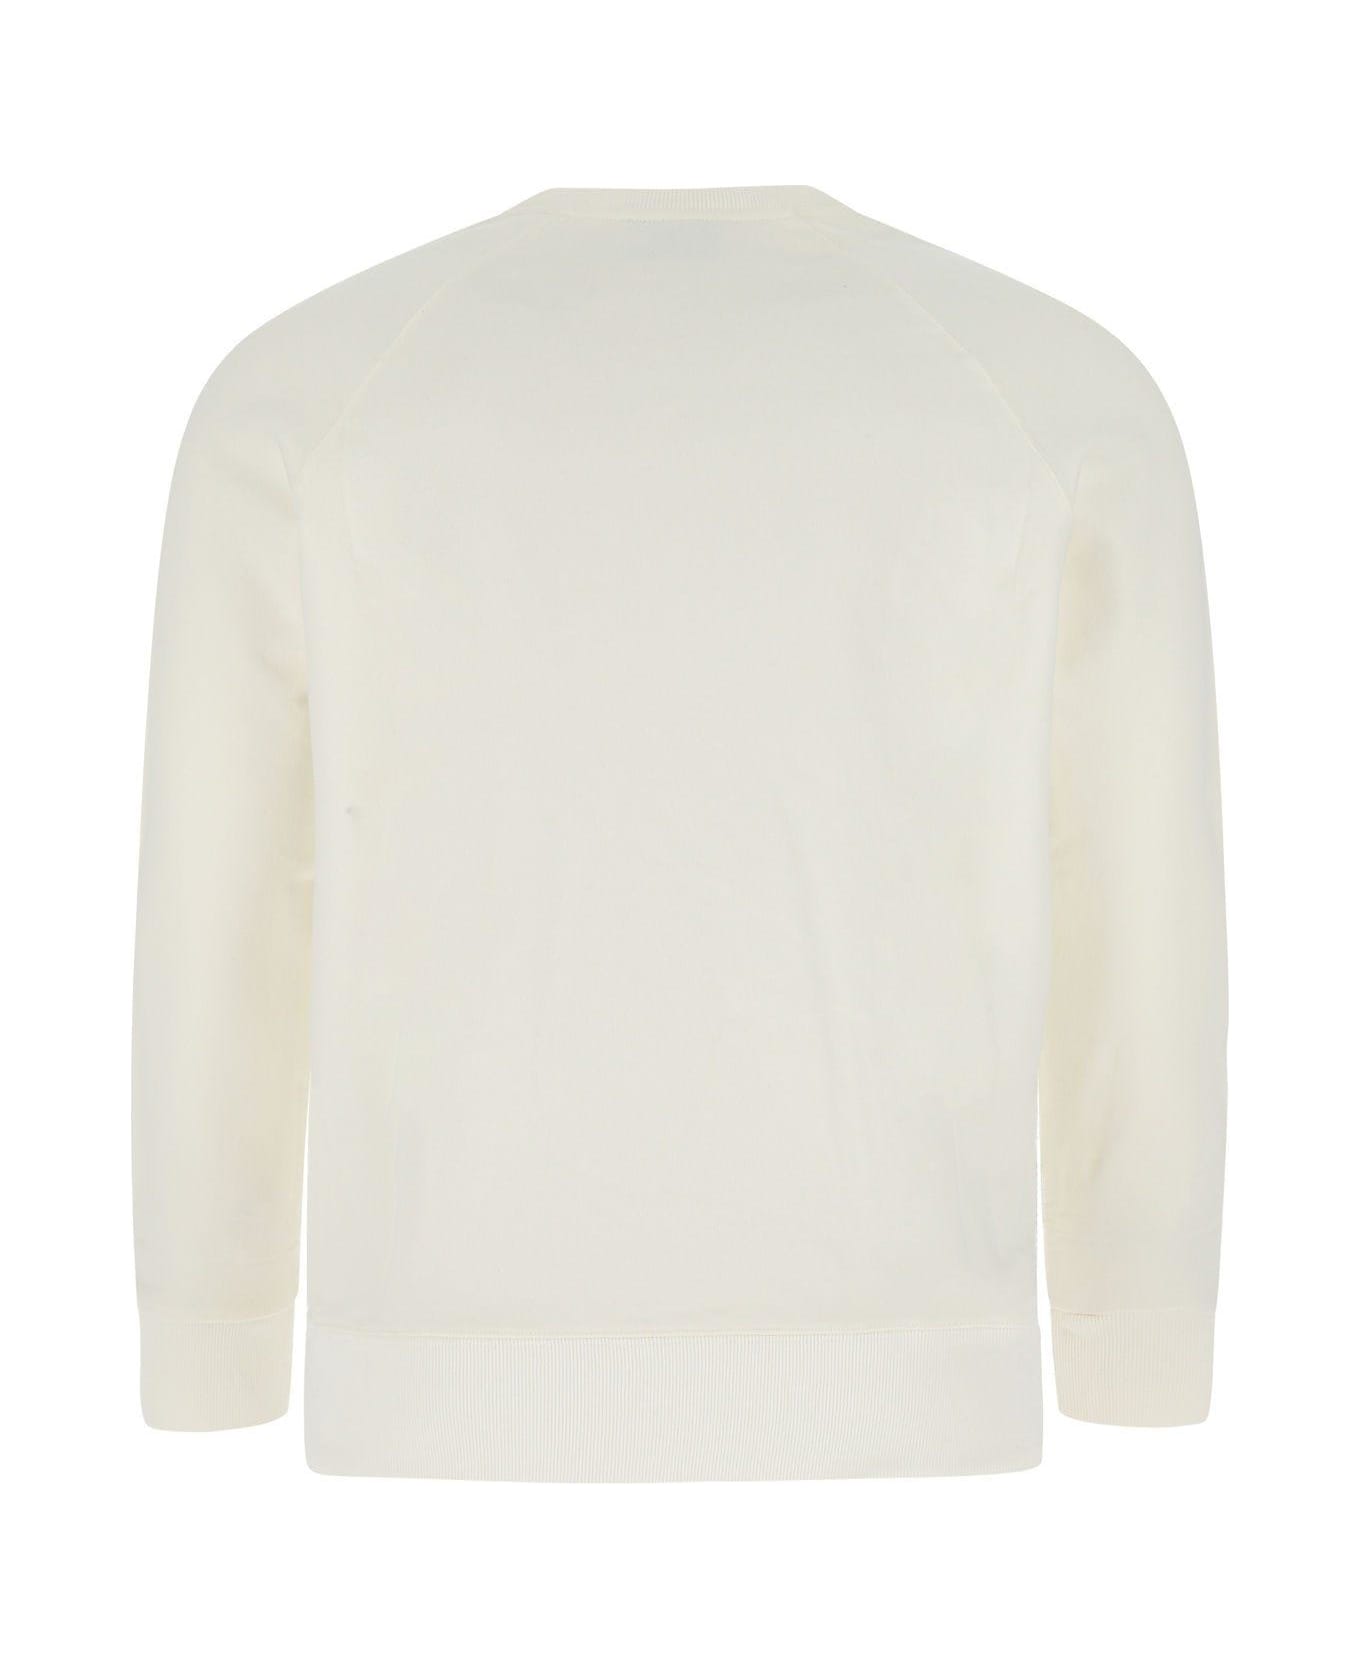 Maison Kitsuné White Cotton Sweatshirt - WHITE